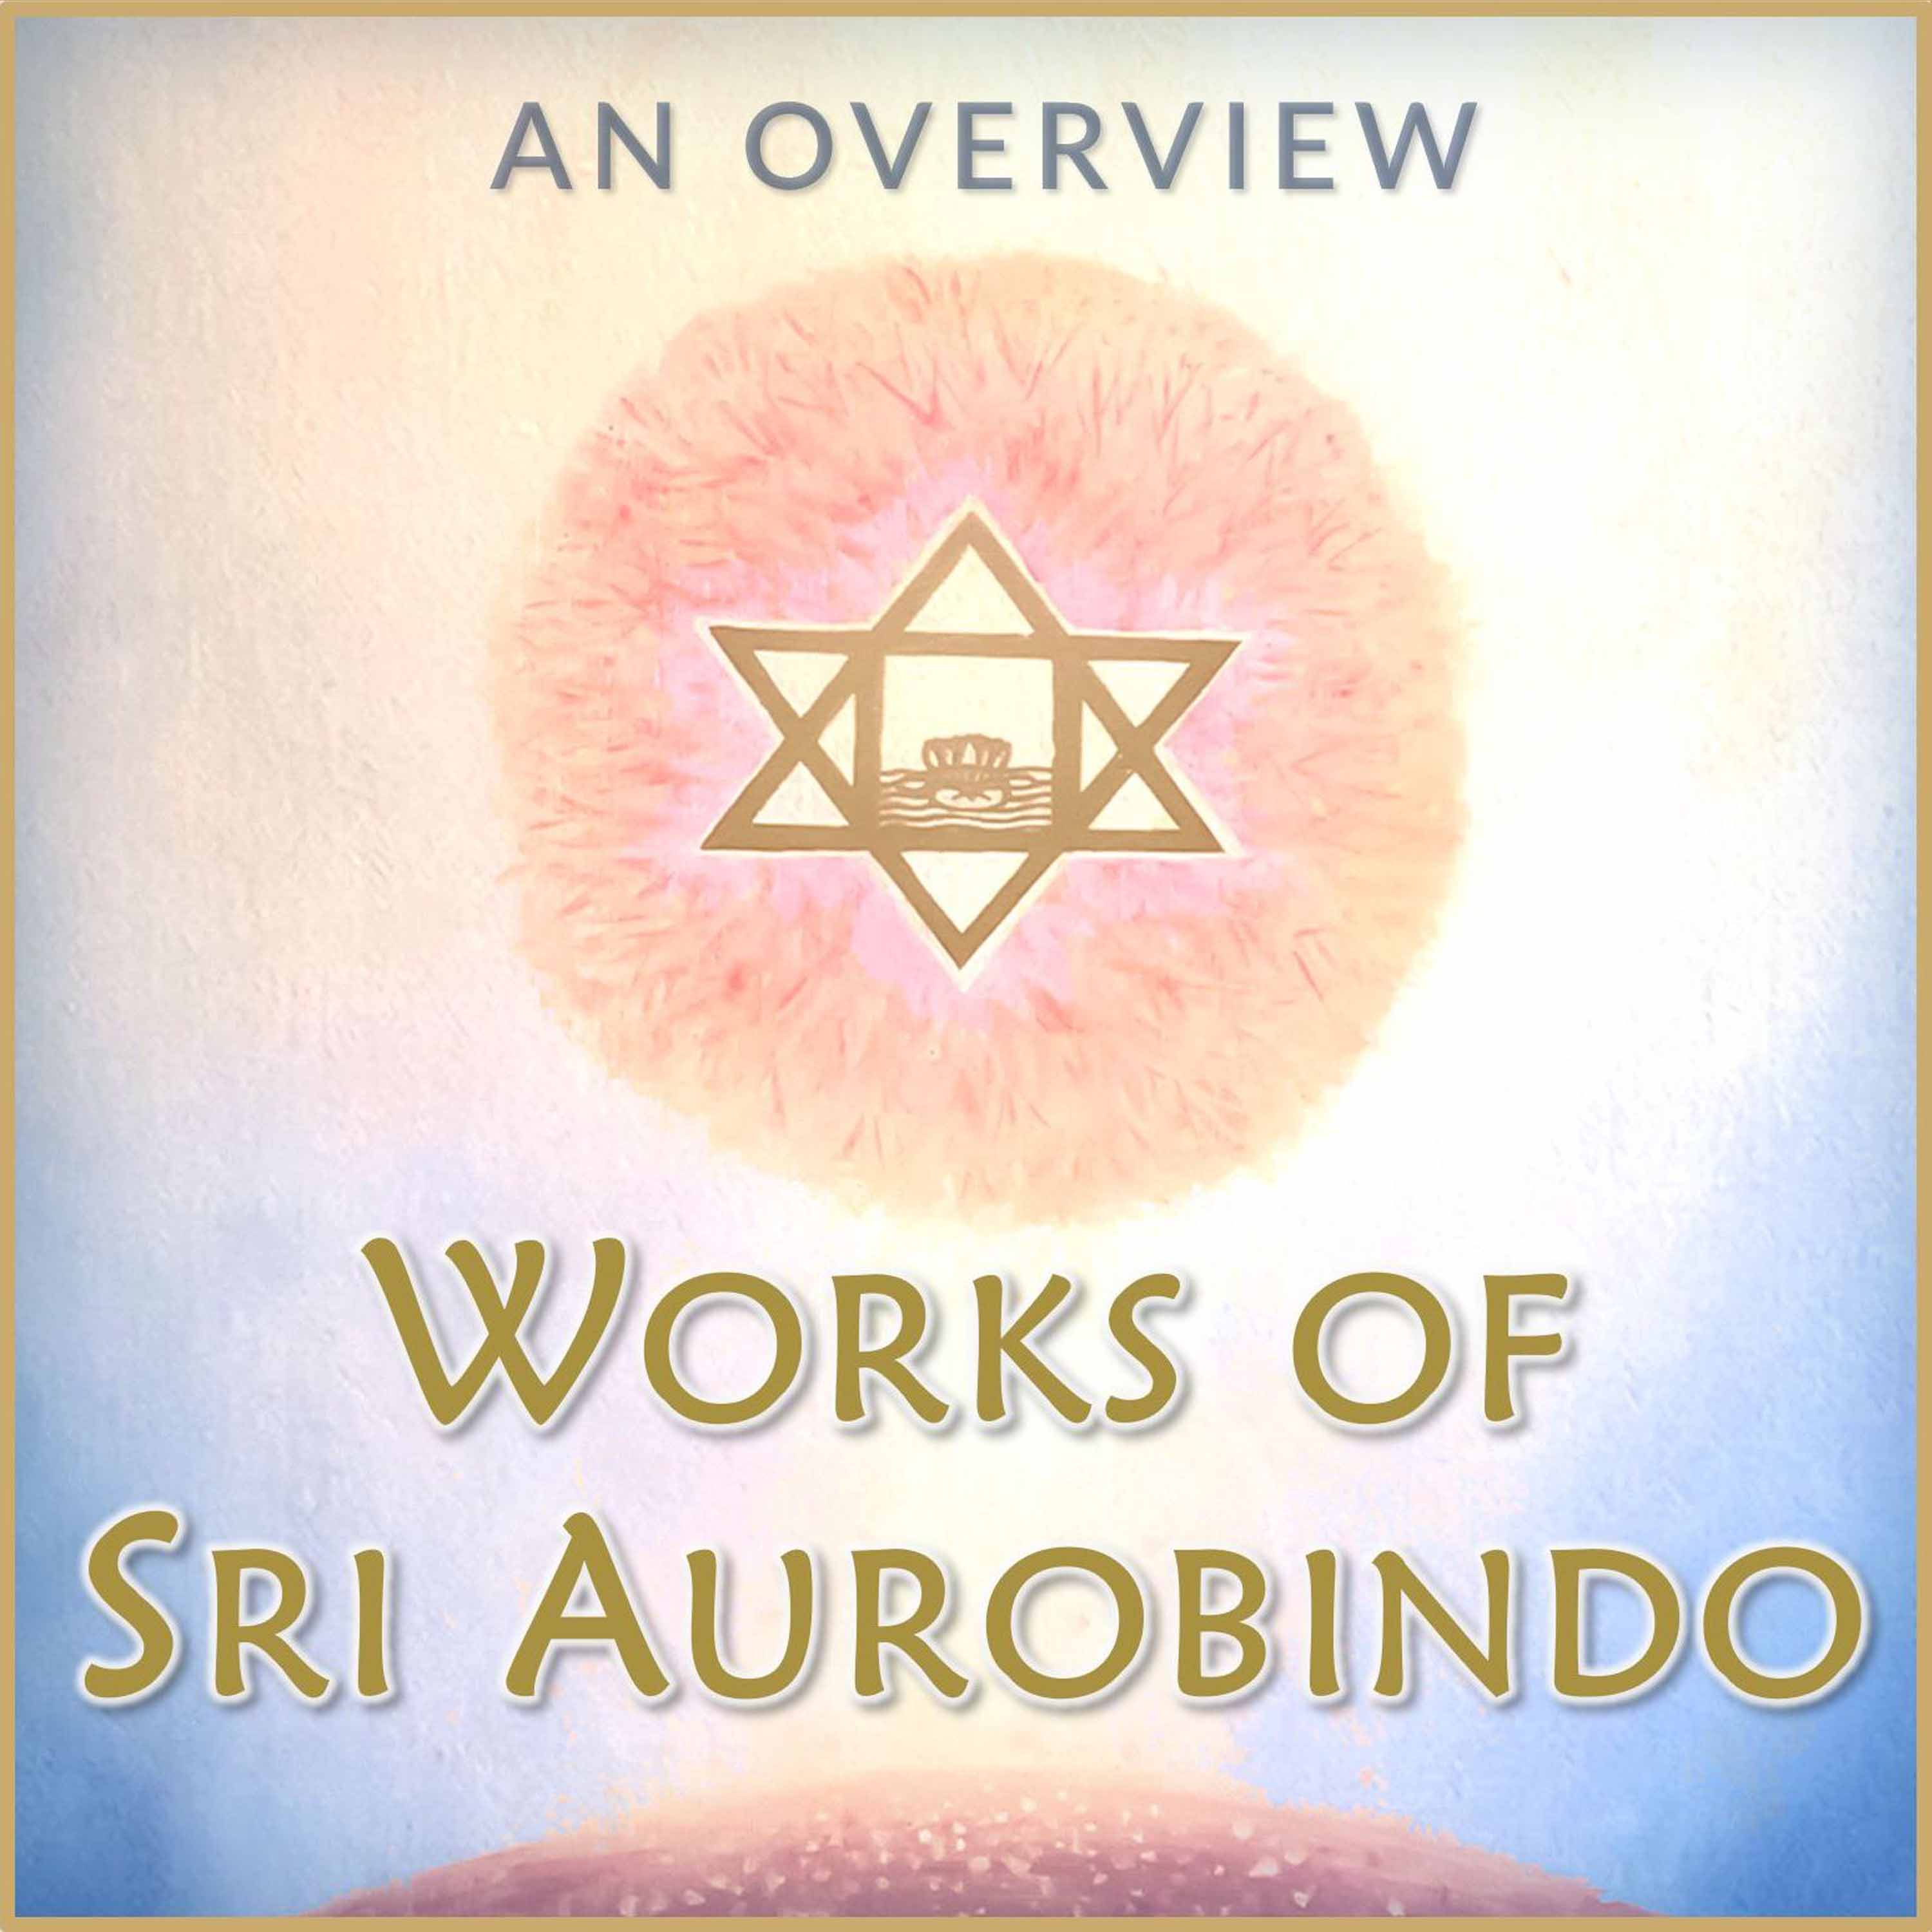 Sri Aurobindo: The Ideal of Human Unity